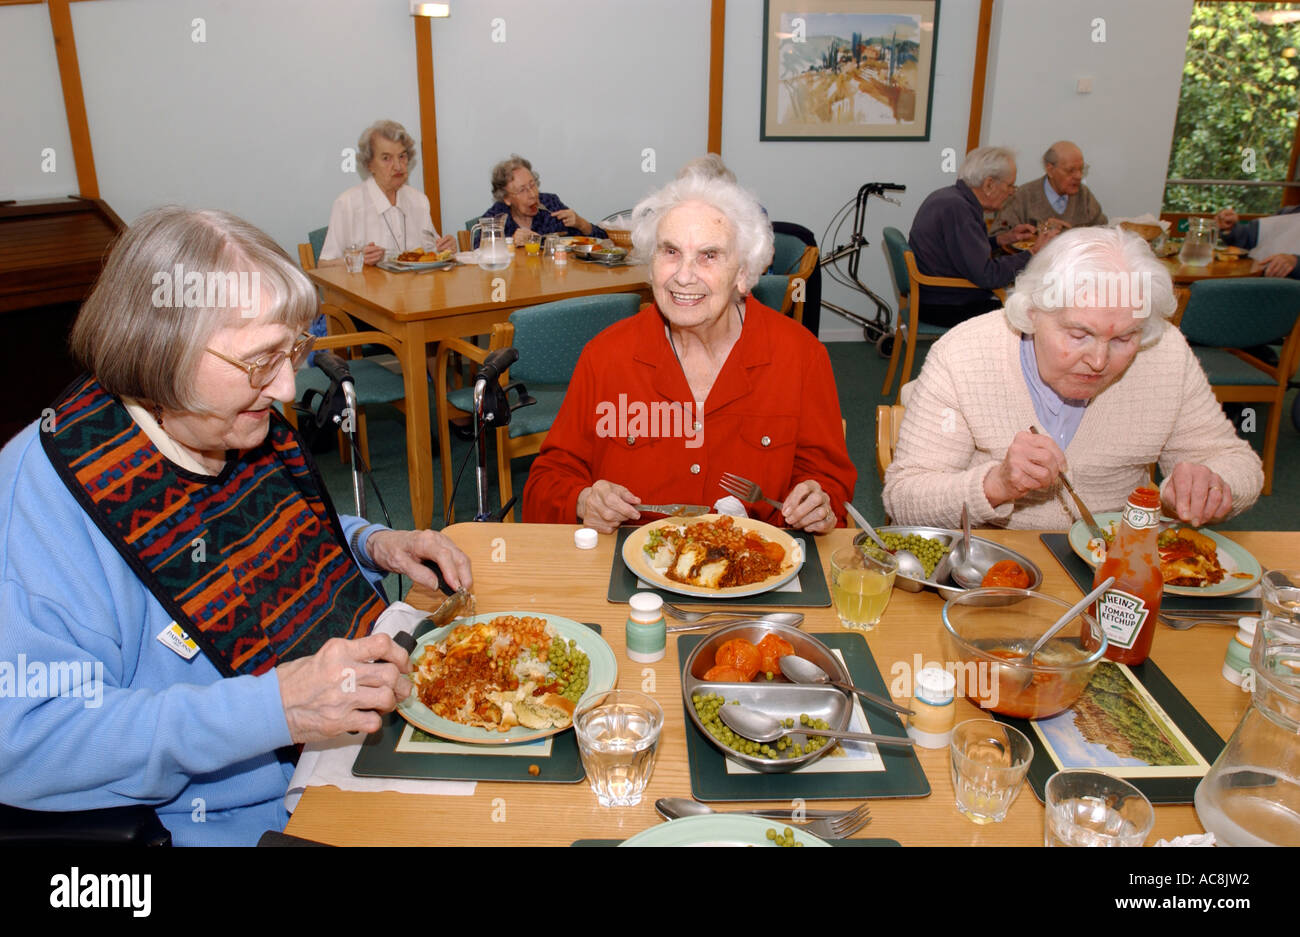 Maison de soins infirmiers résidentiels accueil PAO vieillesse personnes âgées déjeuner dîner nourriture manger, la Grande-Bretagne UK Banque D'Images